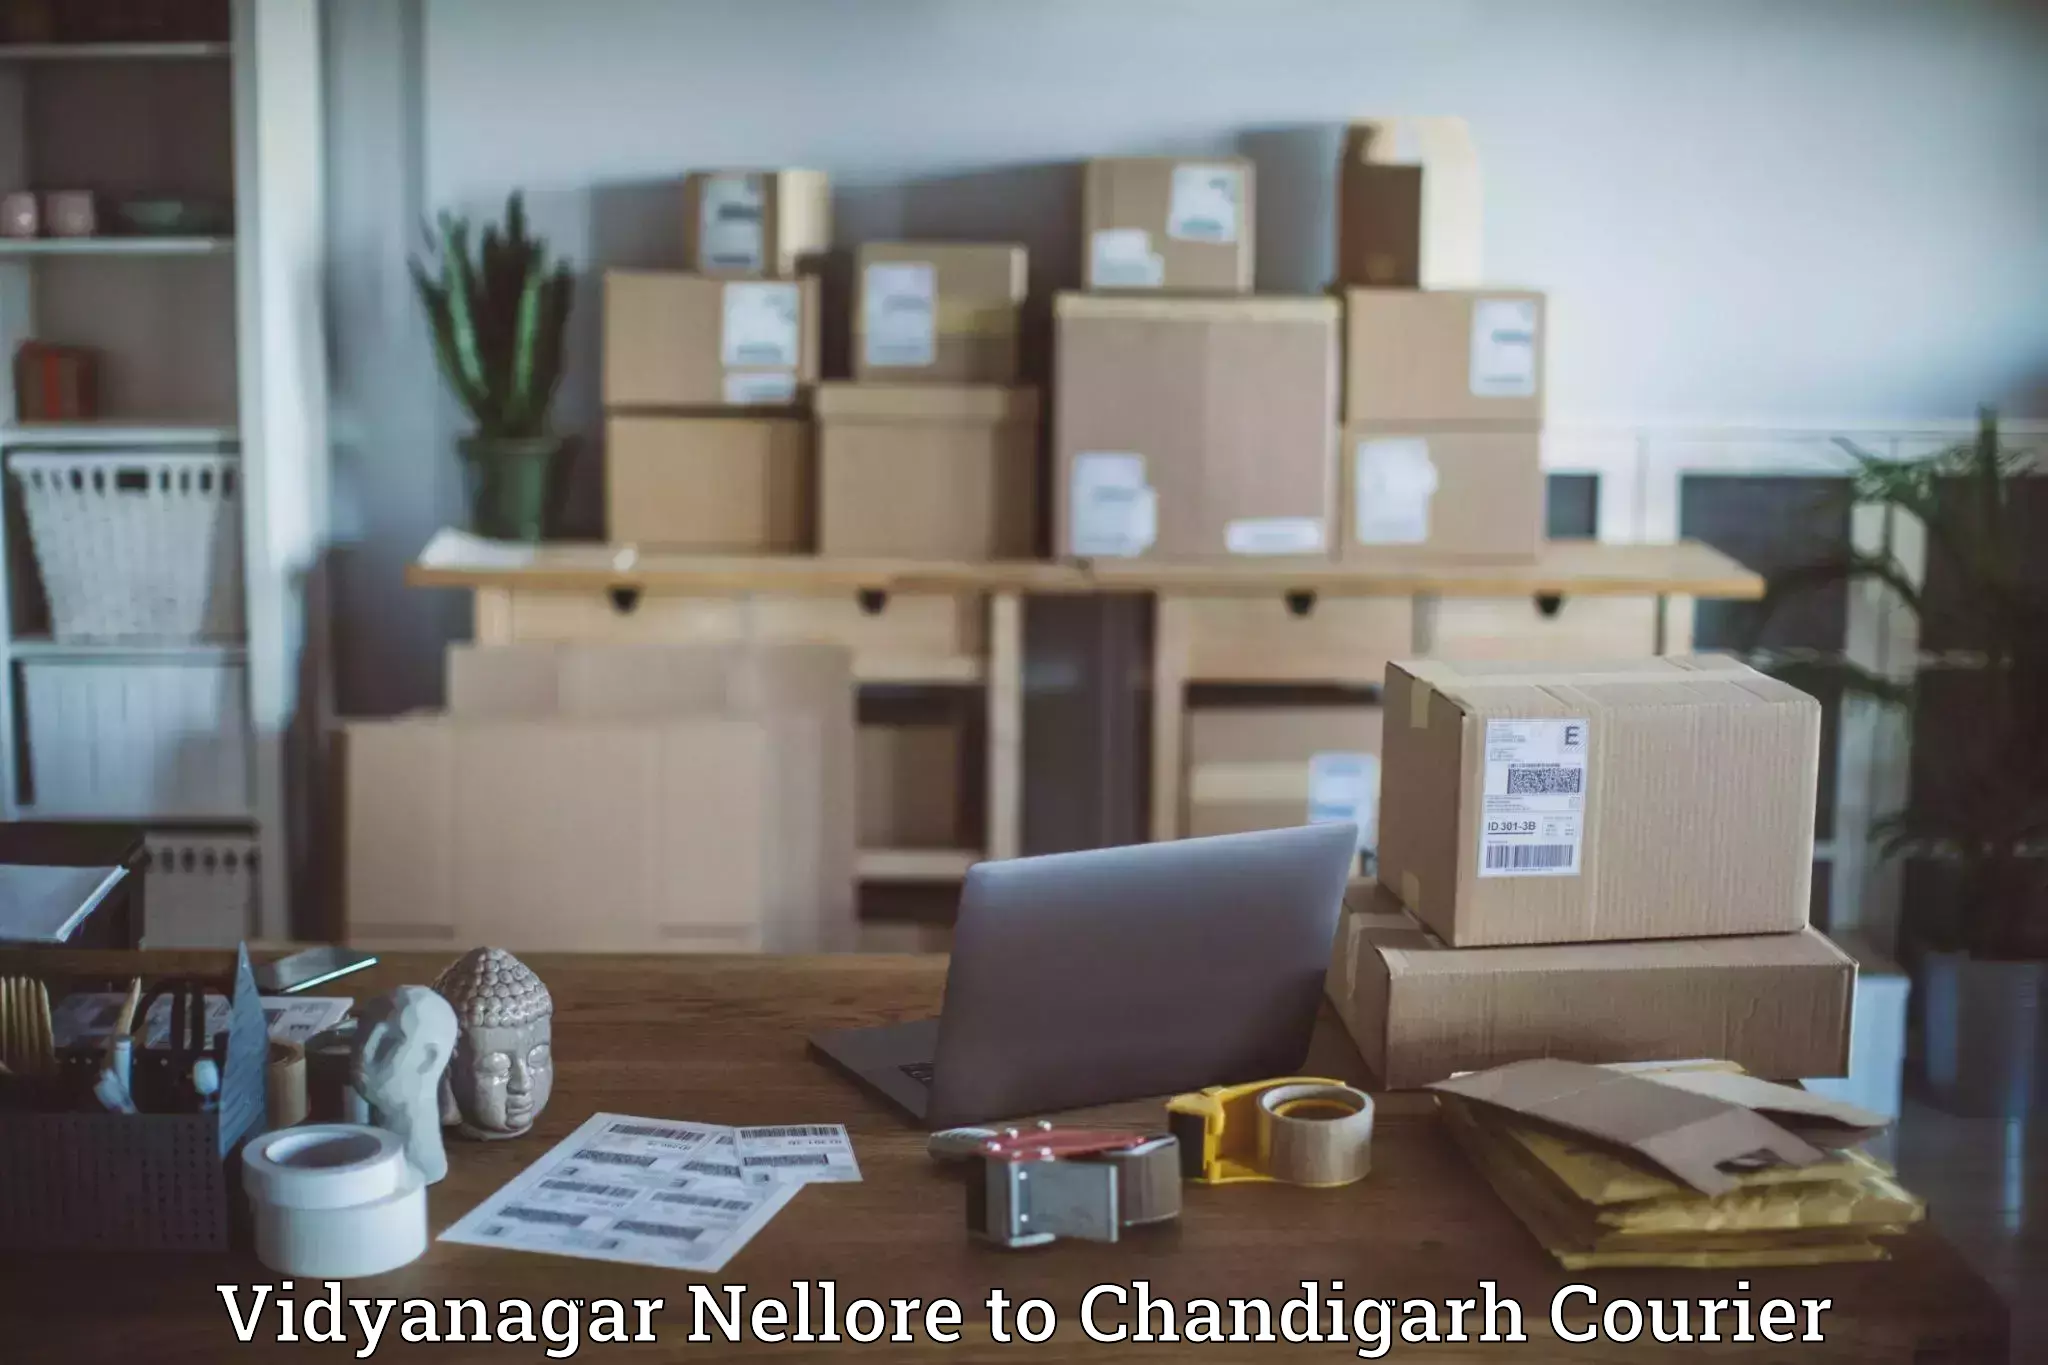 Modern delivery methods Vidyanagar Nellore to Chandigarh